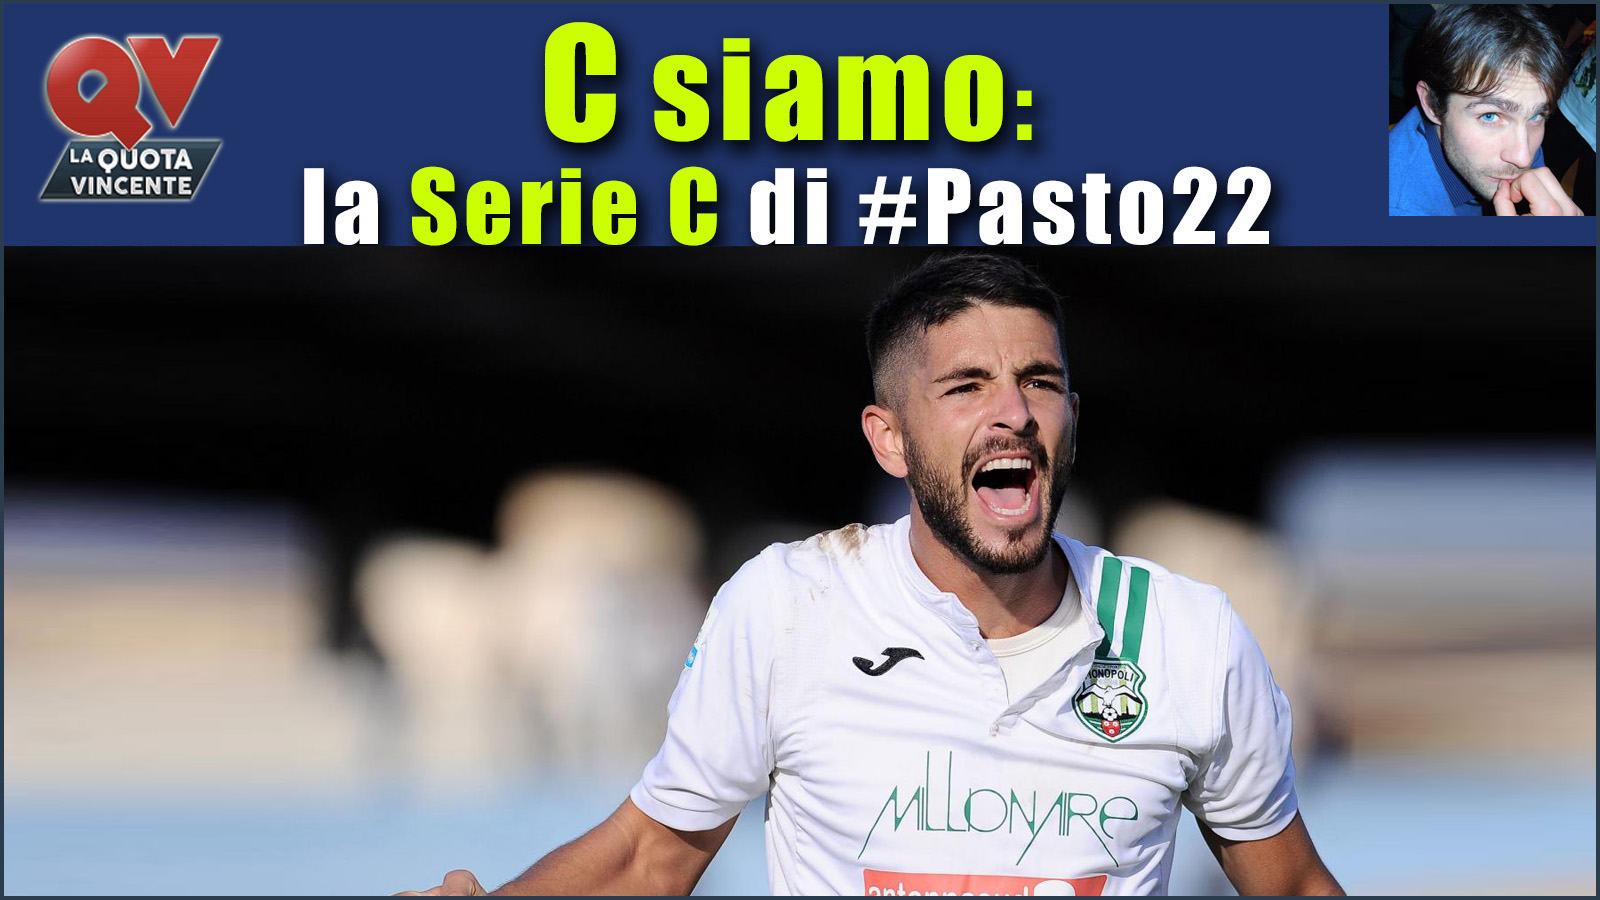 Pronostici Serie C sabato 11 novembre: #Csiamo, il blog di #Pasto22